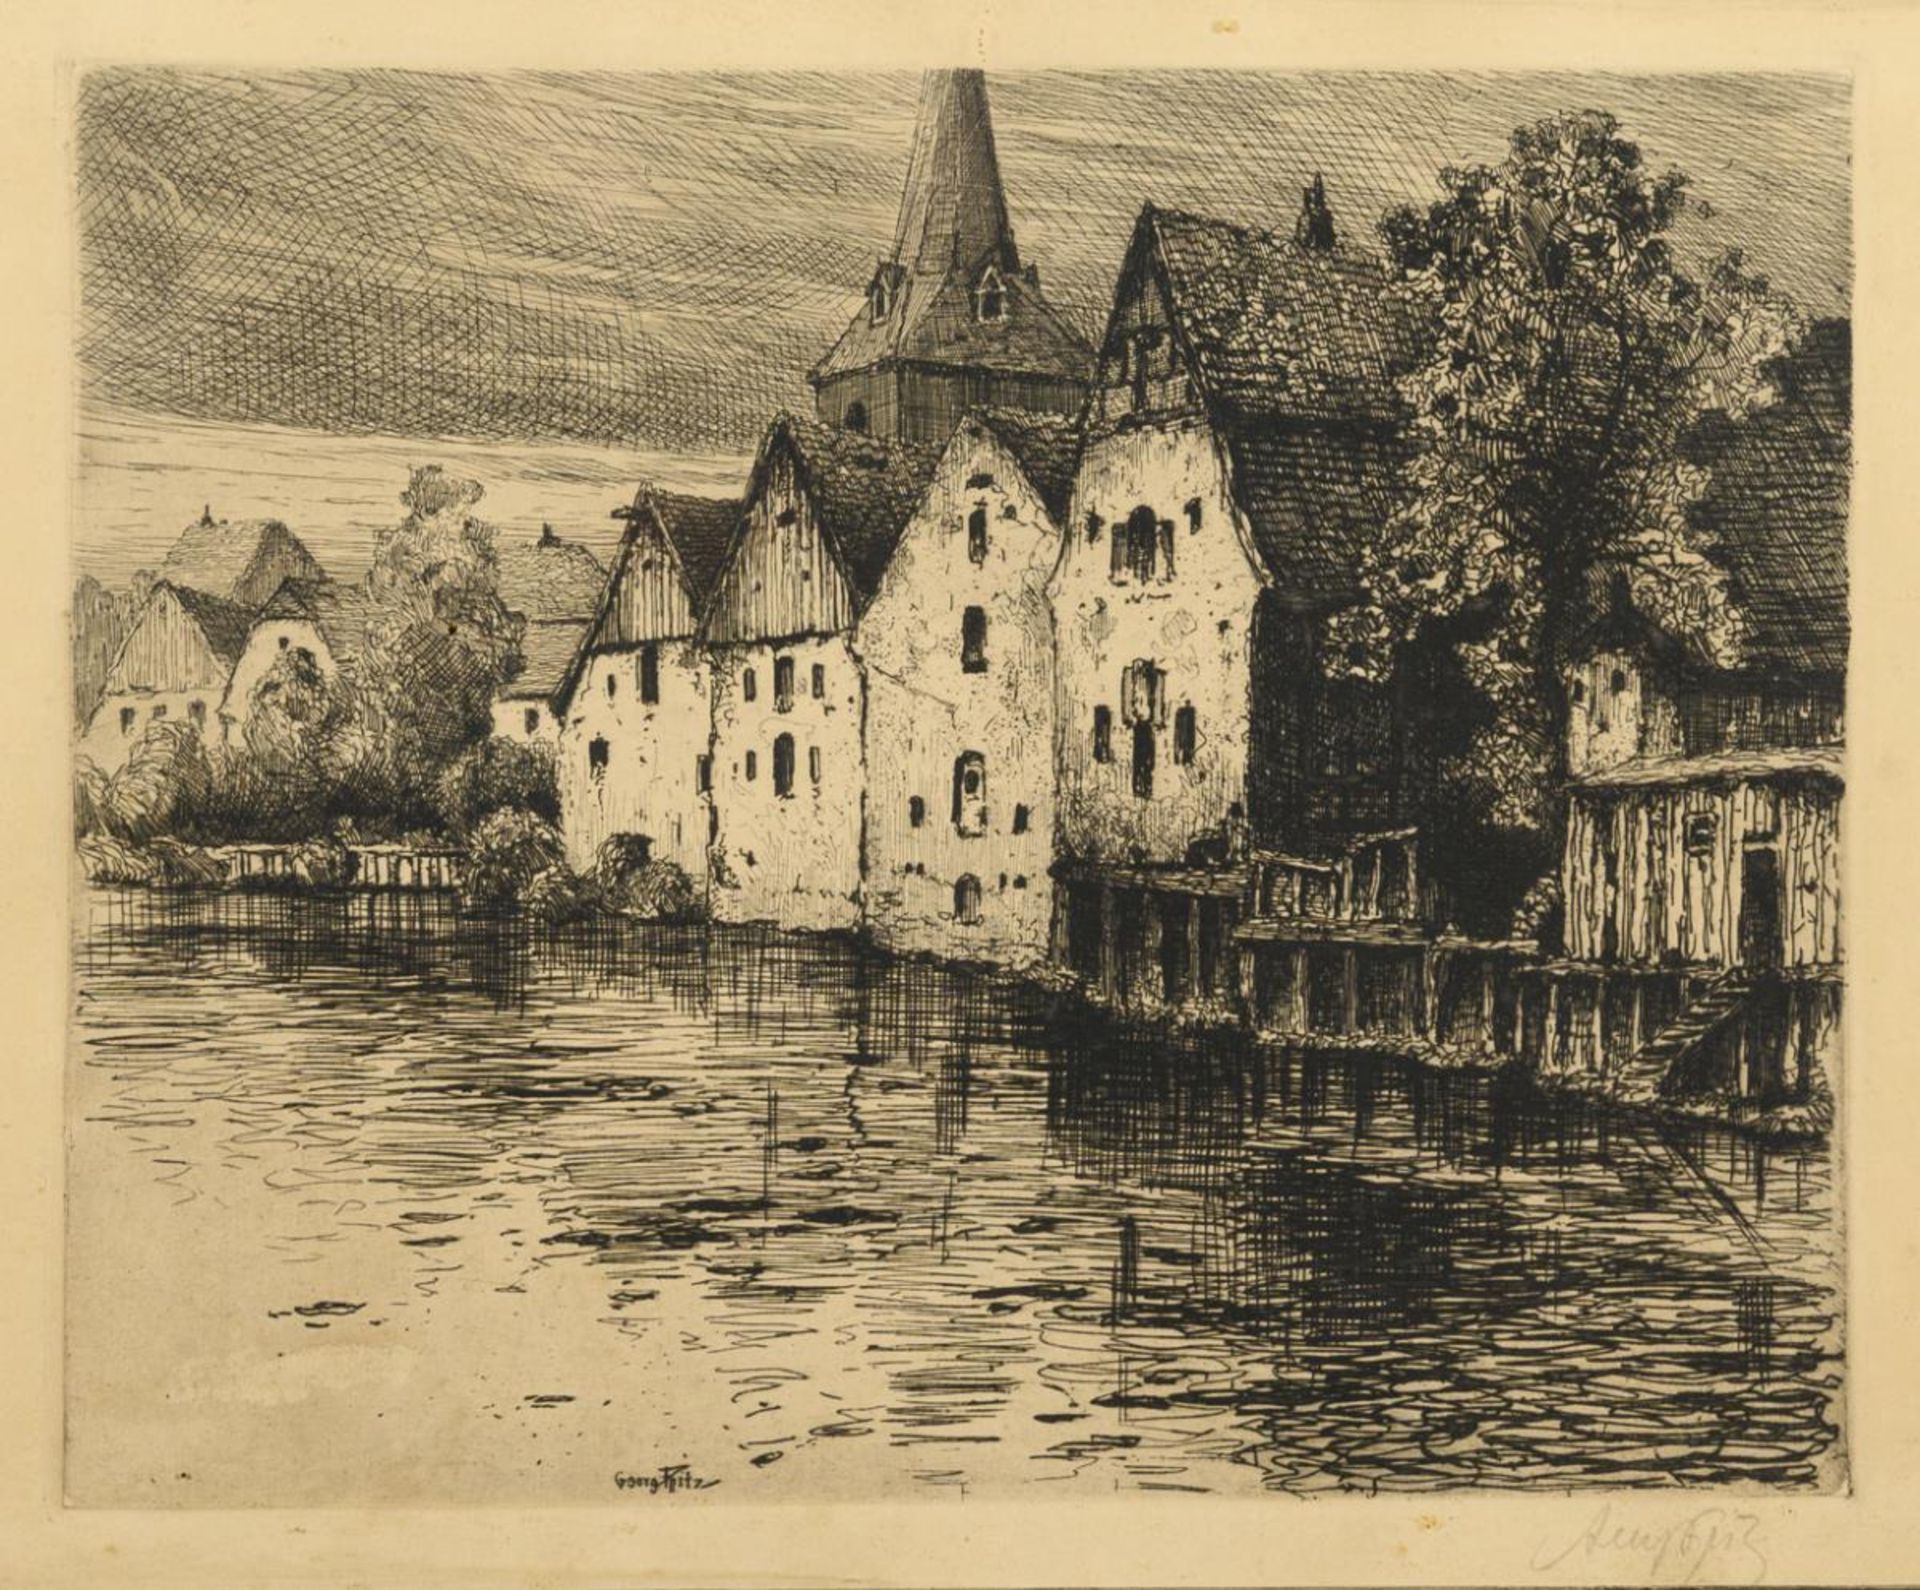 FRITZ, Georg (1884 Dresden - 1967 Mitterfels). Historische Häuser am Wasser.